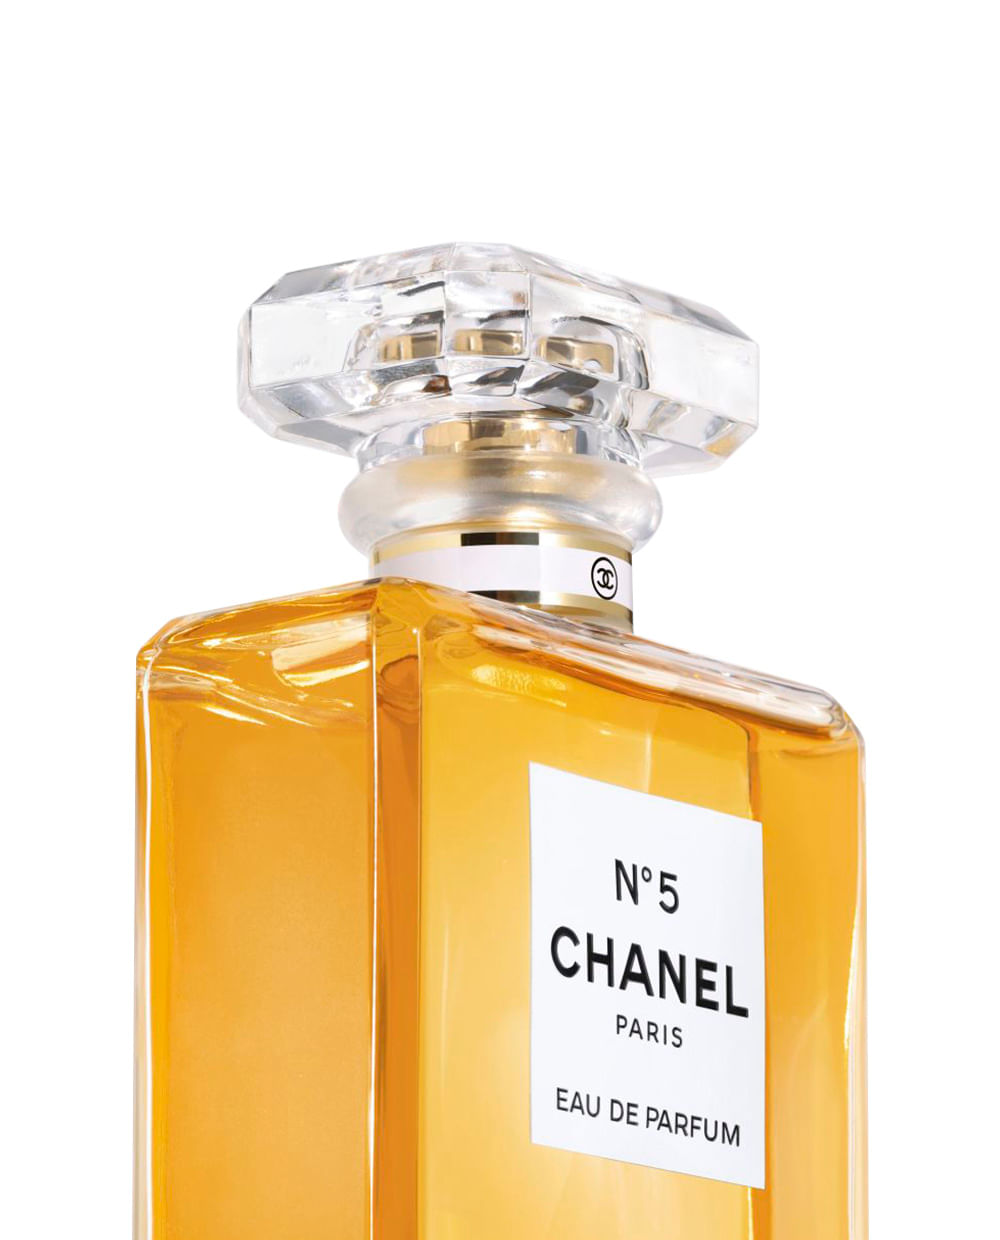 CHANEL - Perfumes para Mujer - El Palacio de Hierro